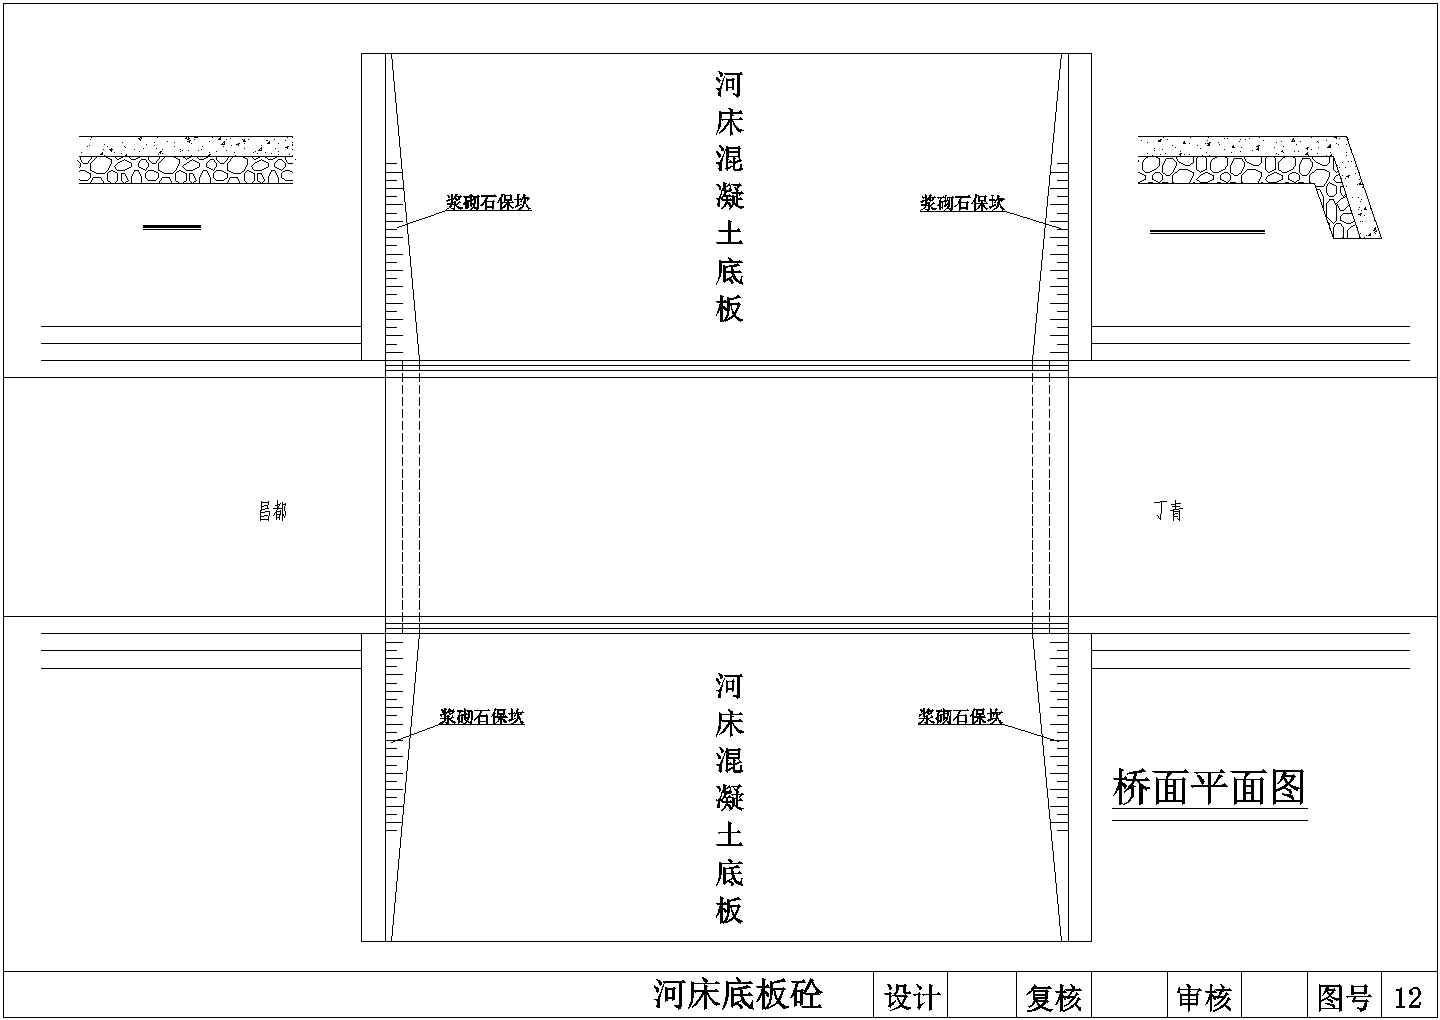 1-20m预制混凝土块拱桥施工图